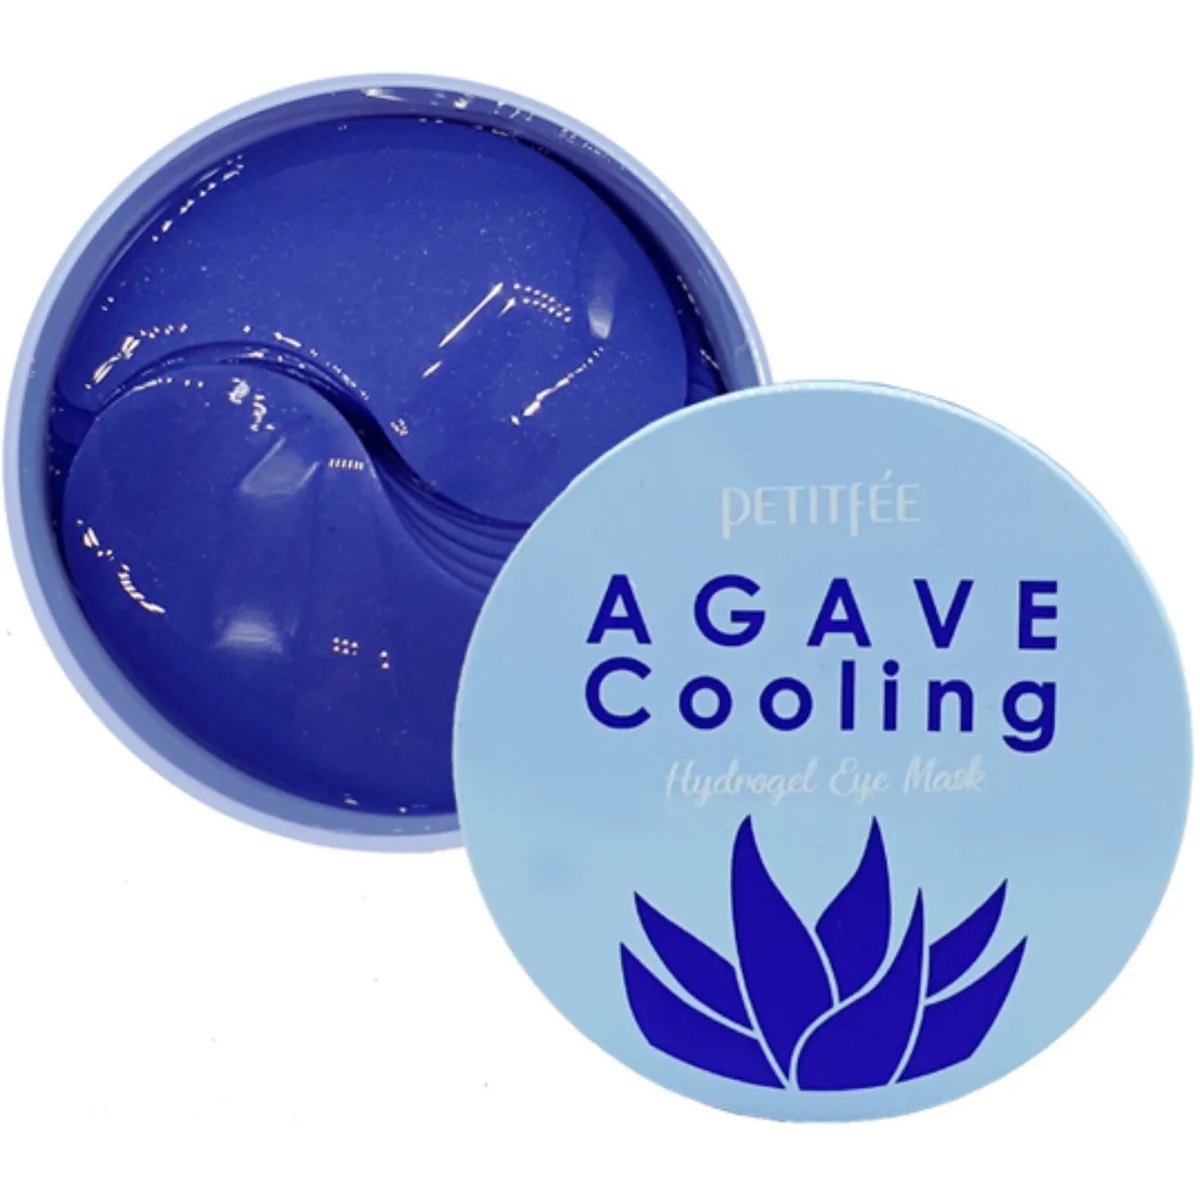 Гідрогелеві патчі для очей Petitfee Agava Cooling Hydrogel Eye Mask Agave, 60 шт. - фото 2